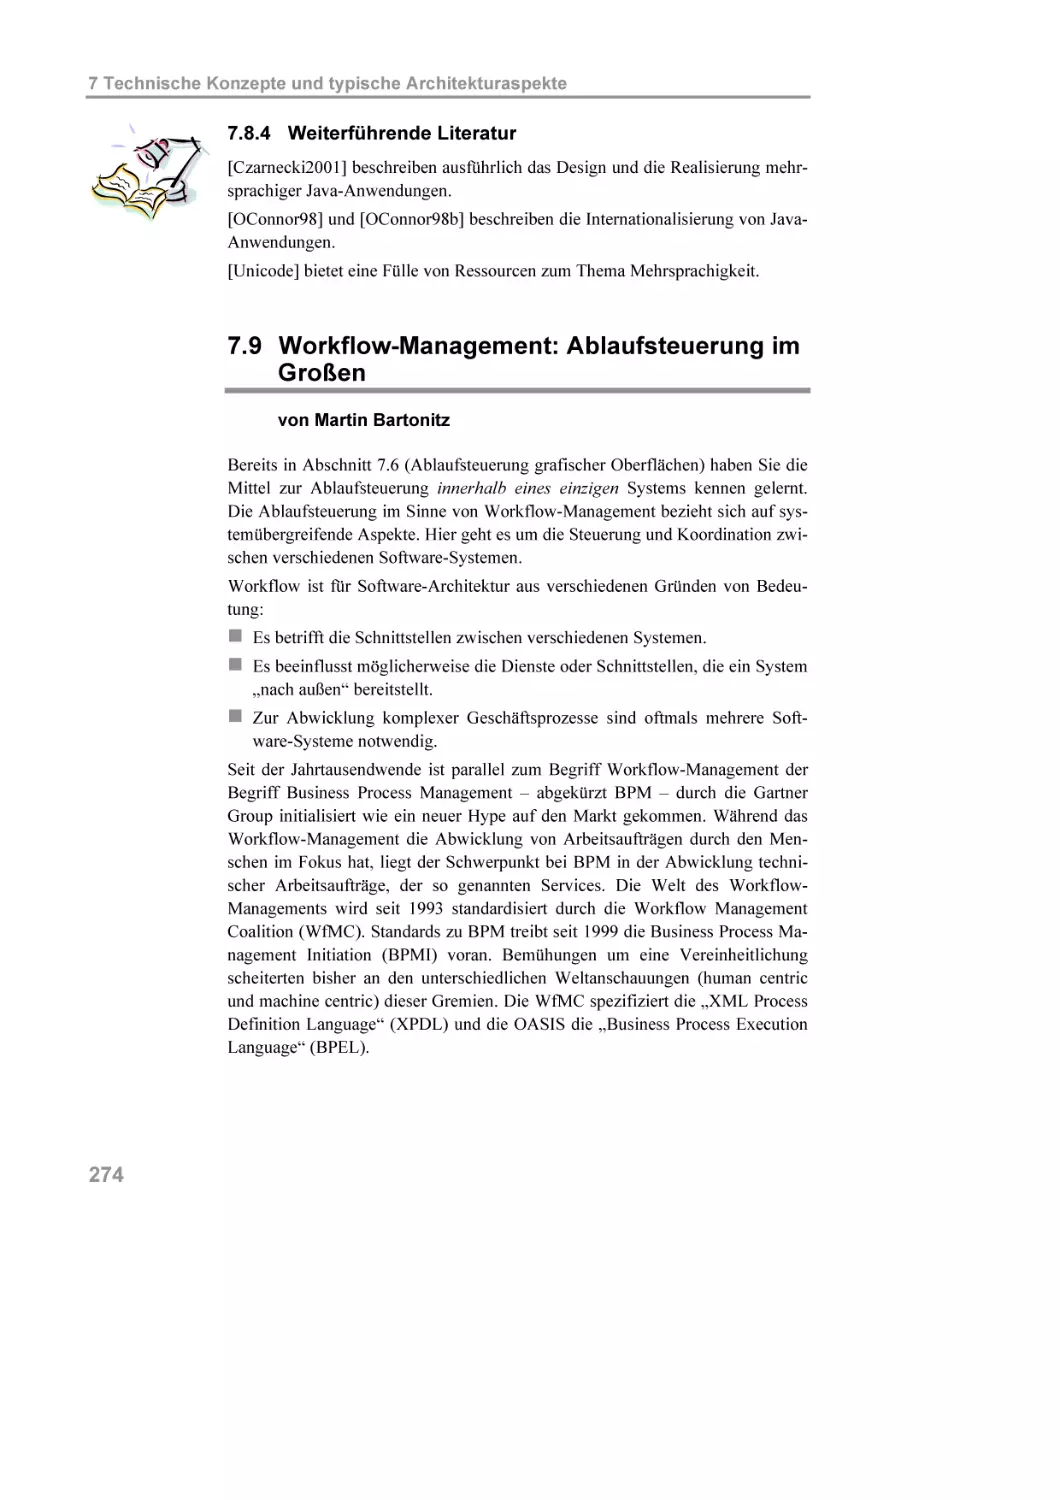 7.8.4 Weiterführende Literatur
7.9 Workflow-Management